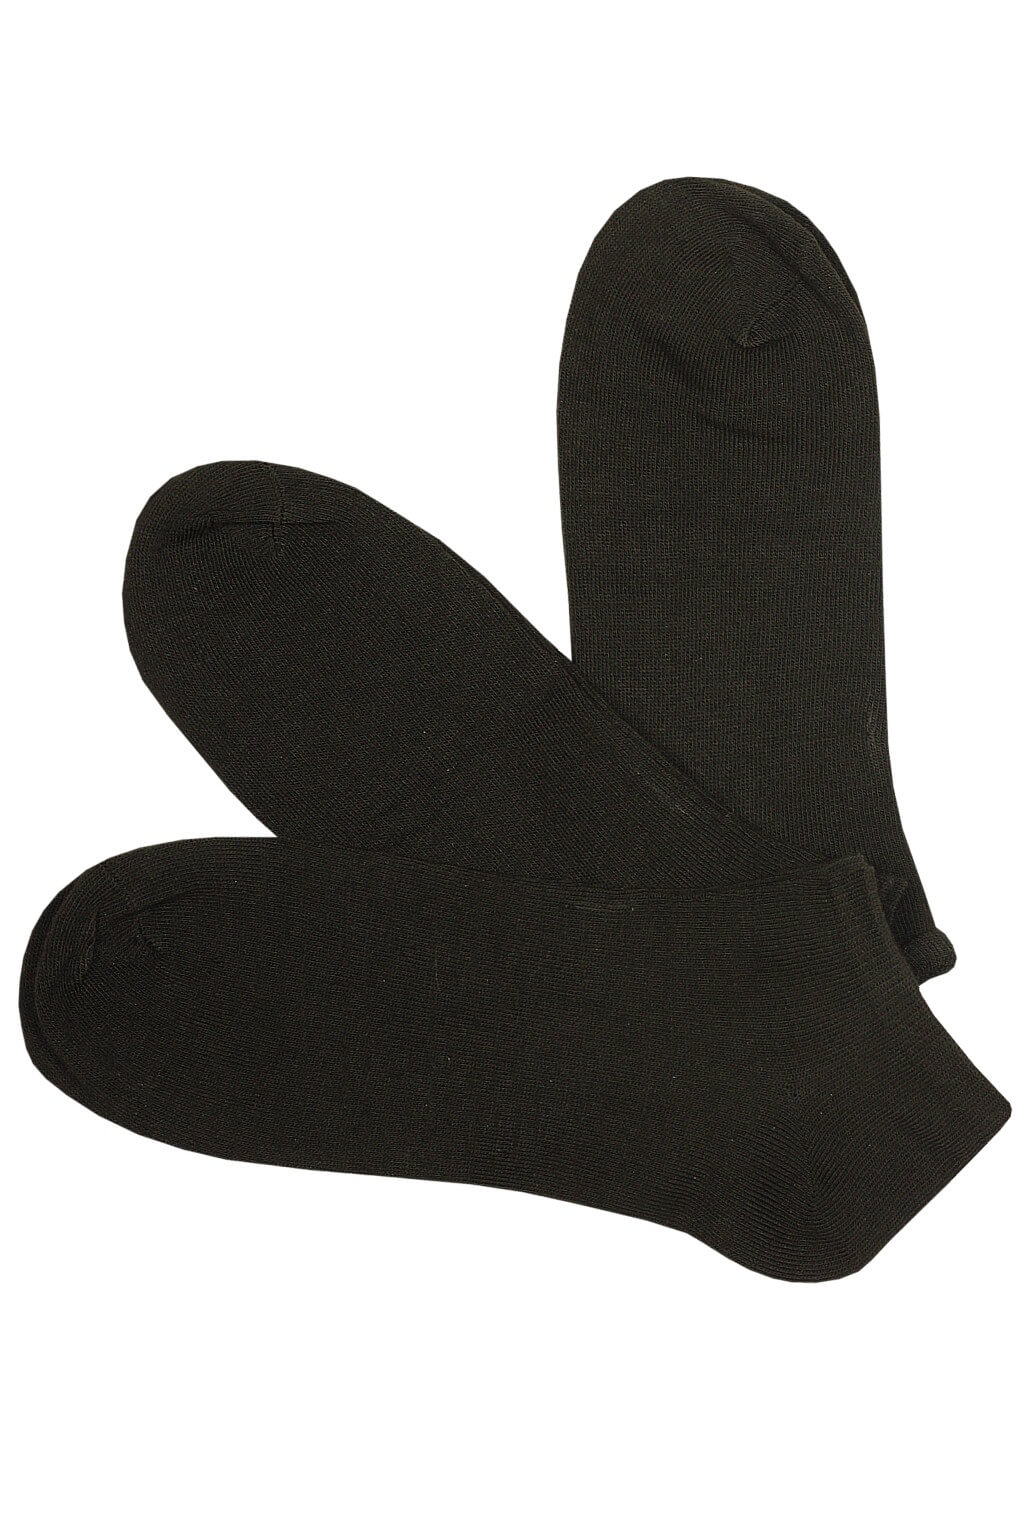 Pánské levné ponožky kotníčkové 3Pack EM1001C 40-44 černá